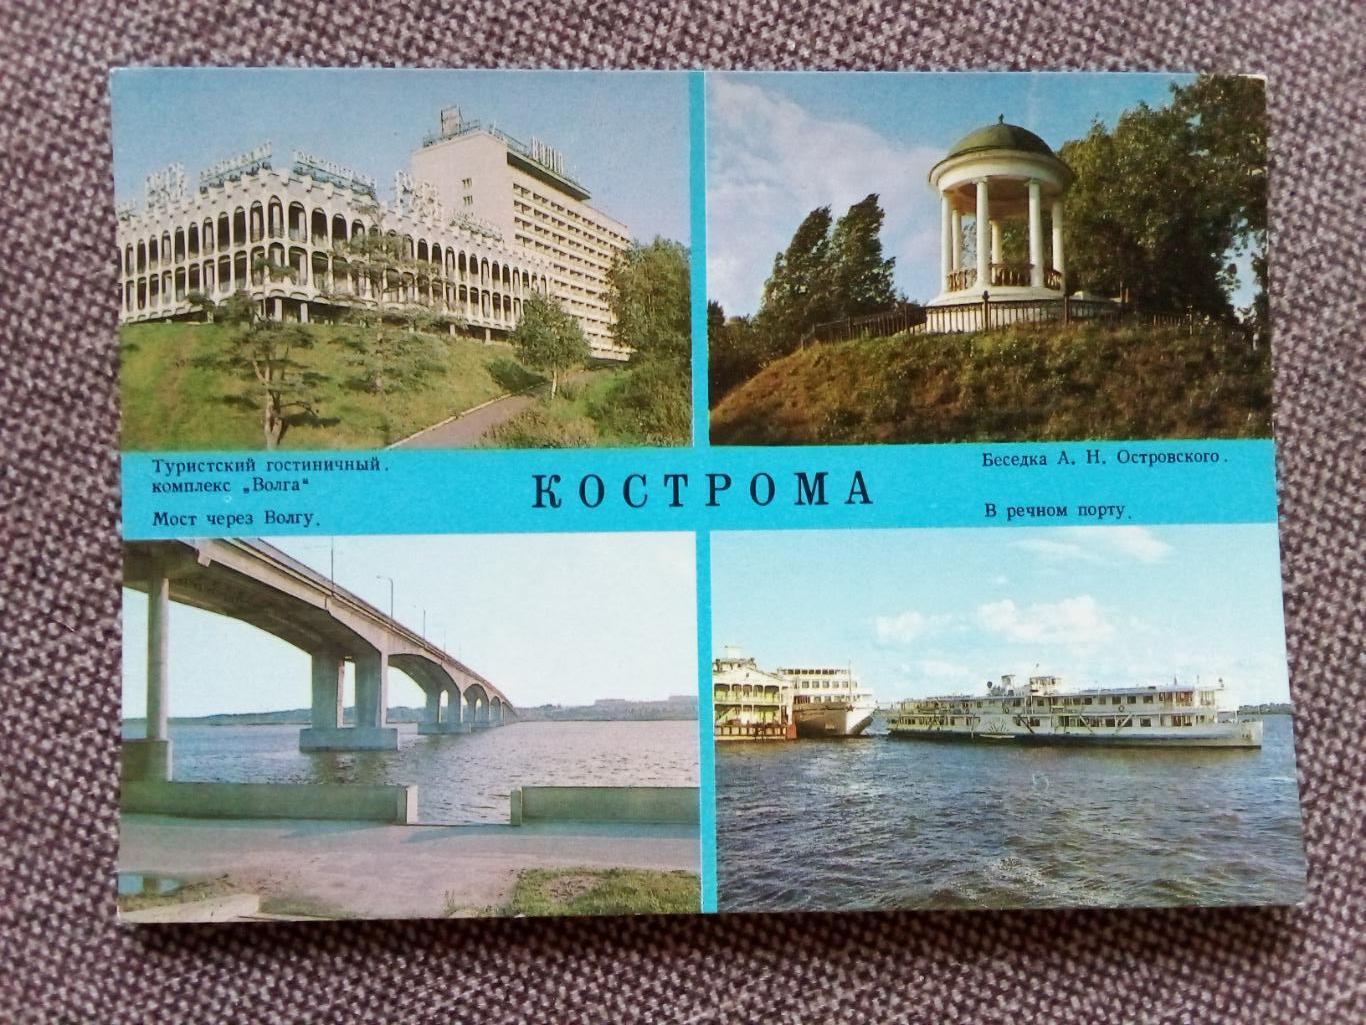 Города СССР : Кострома - Речной порт (Транспорт Коллаж) 1983 г. (почтовая)